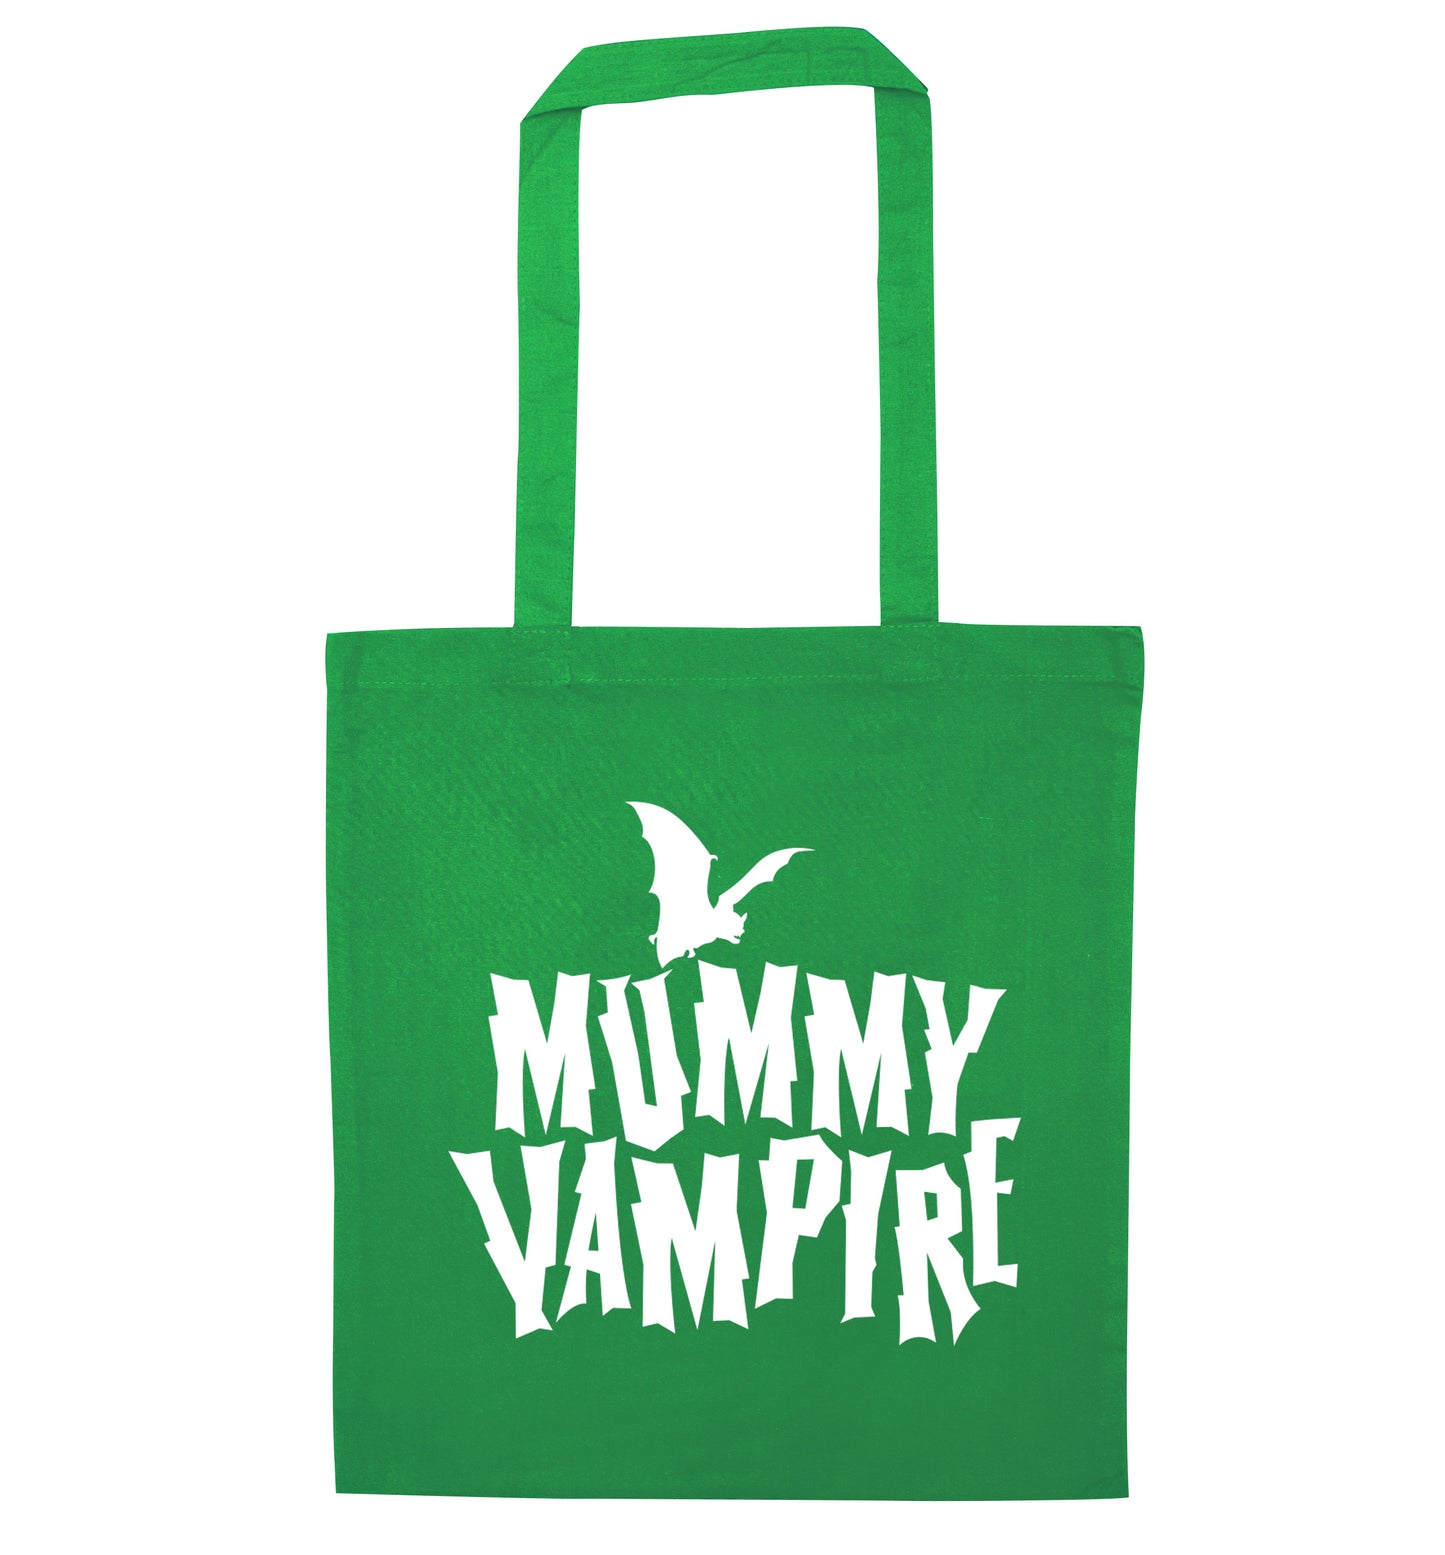 Mummy vampire green tote bag